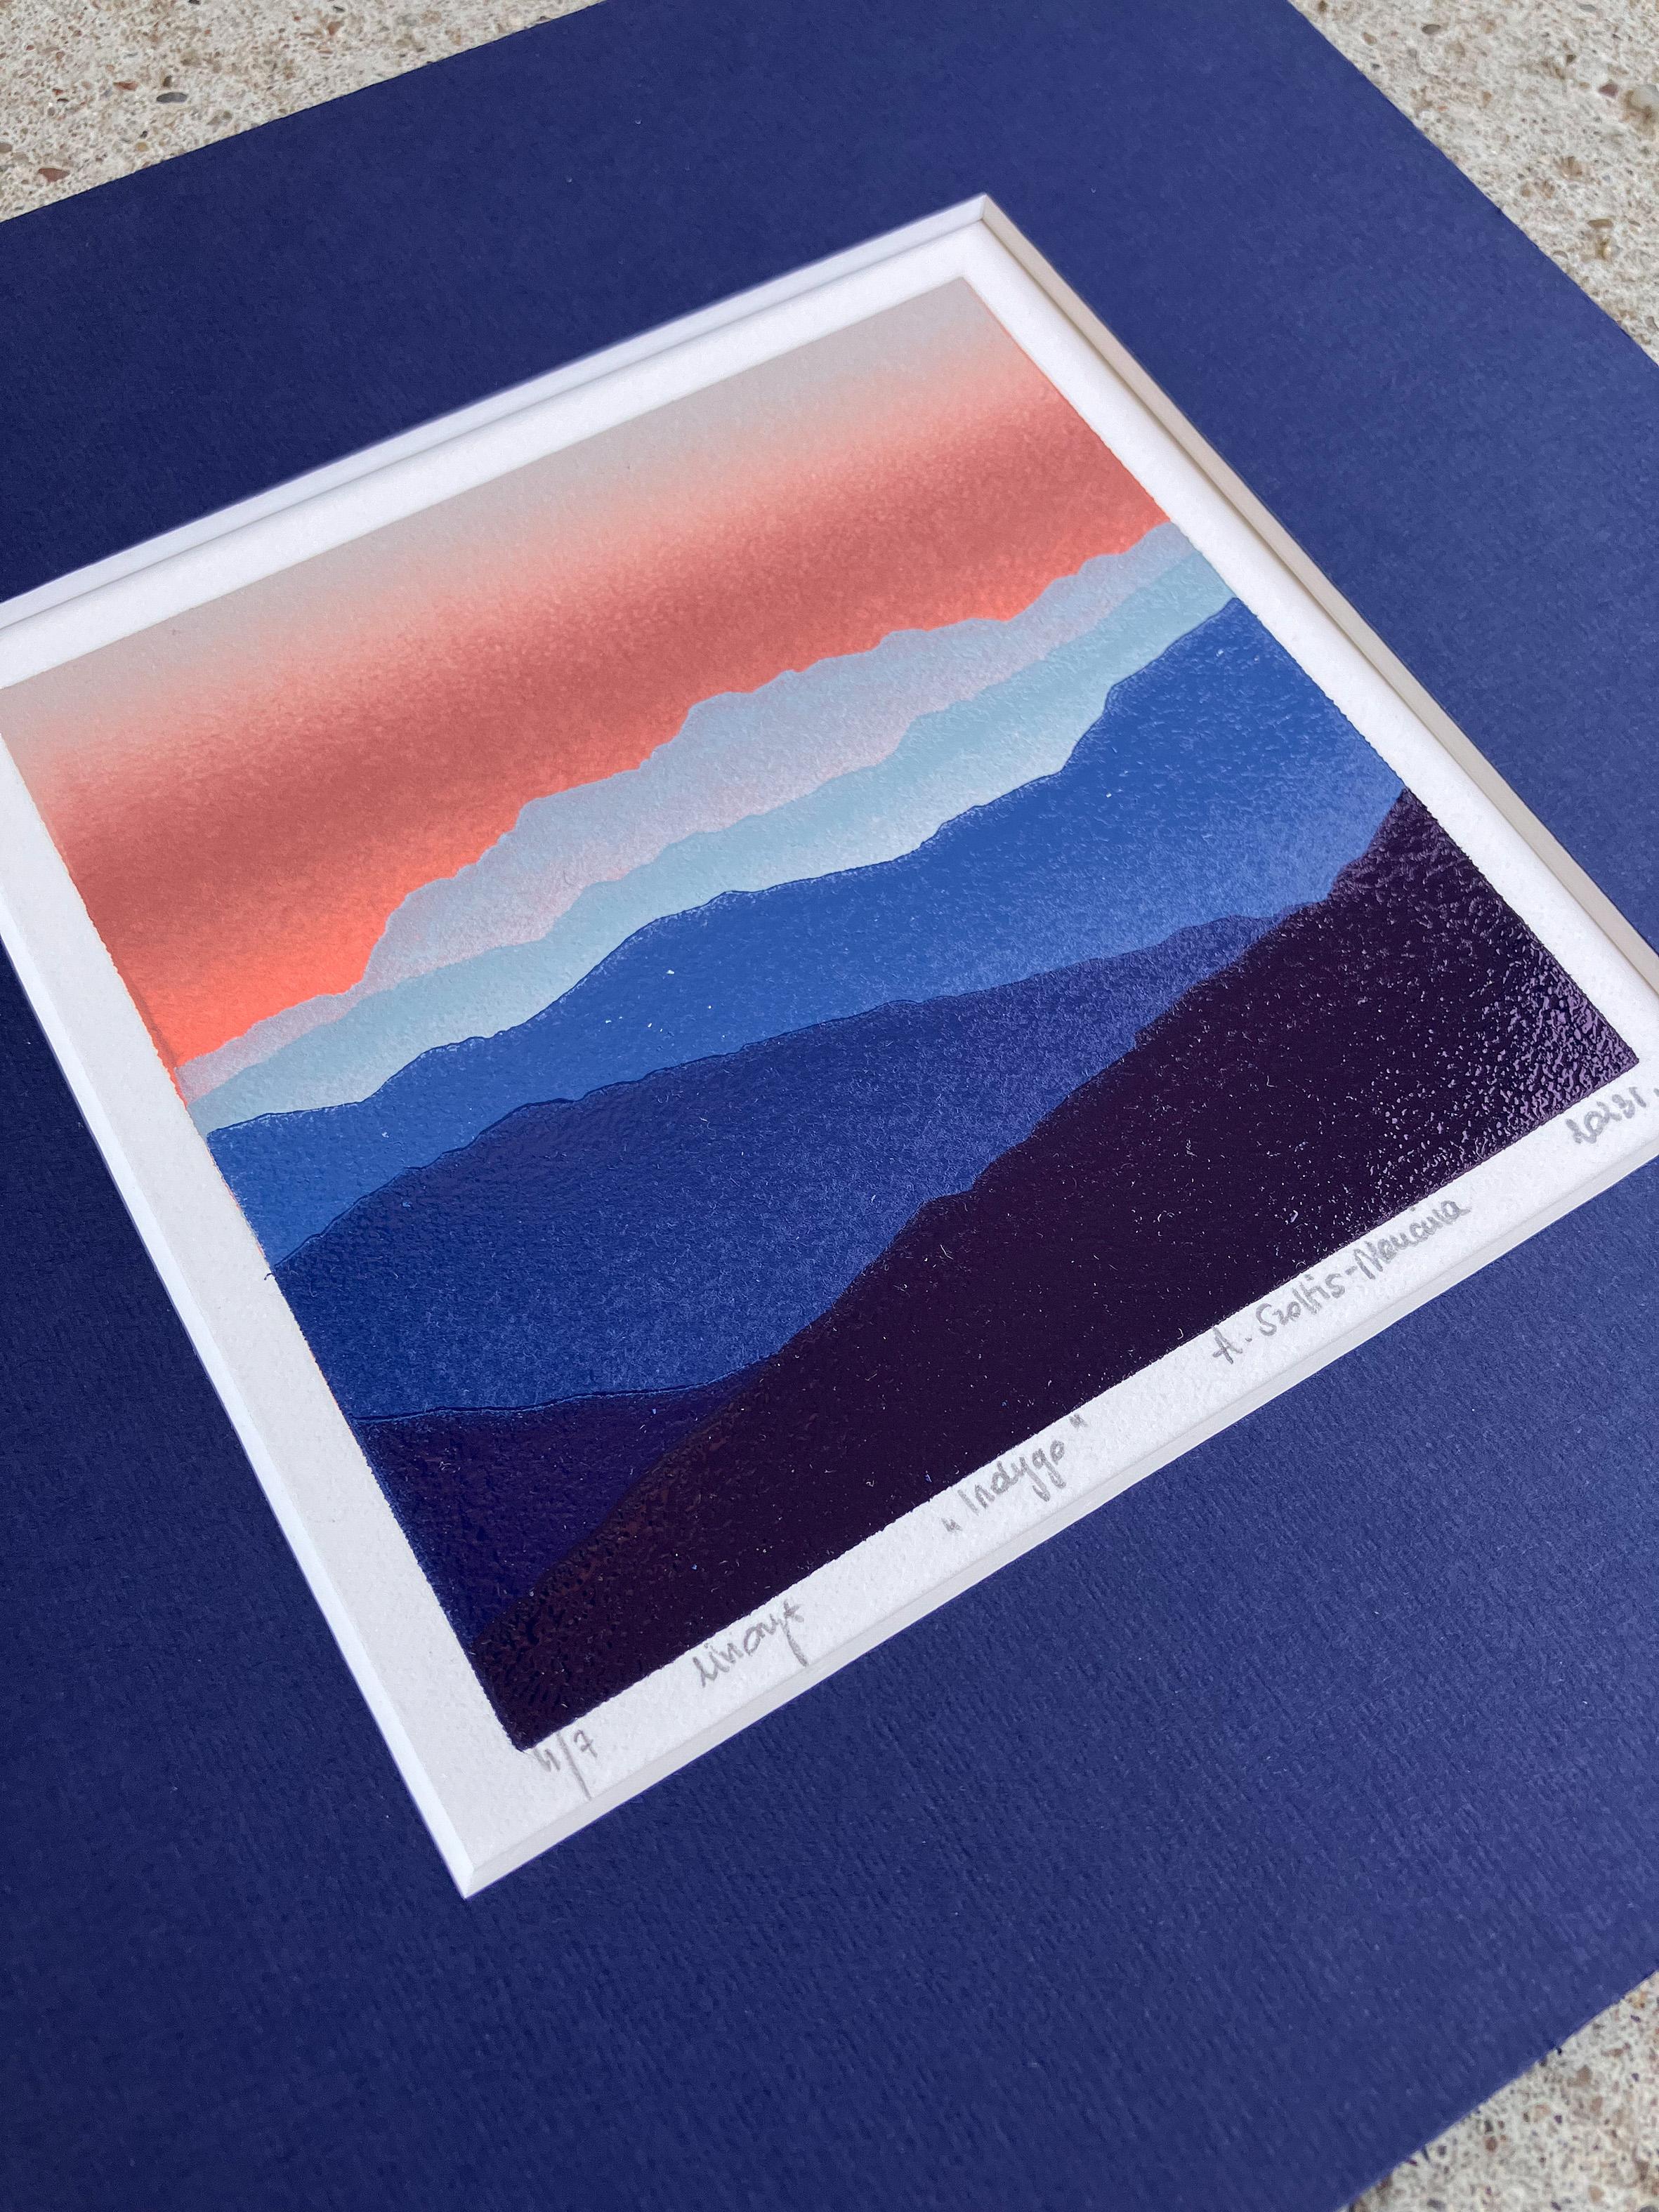 Indigo - Berge Landschaft, handgefertigt im Linoschliff  Limitierte Auflage Druck Einzigartig 4/7 (Zeitgenössisch), Print, von Aneta Szoltis-Mencina